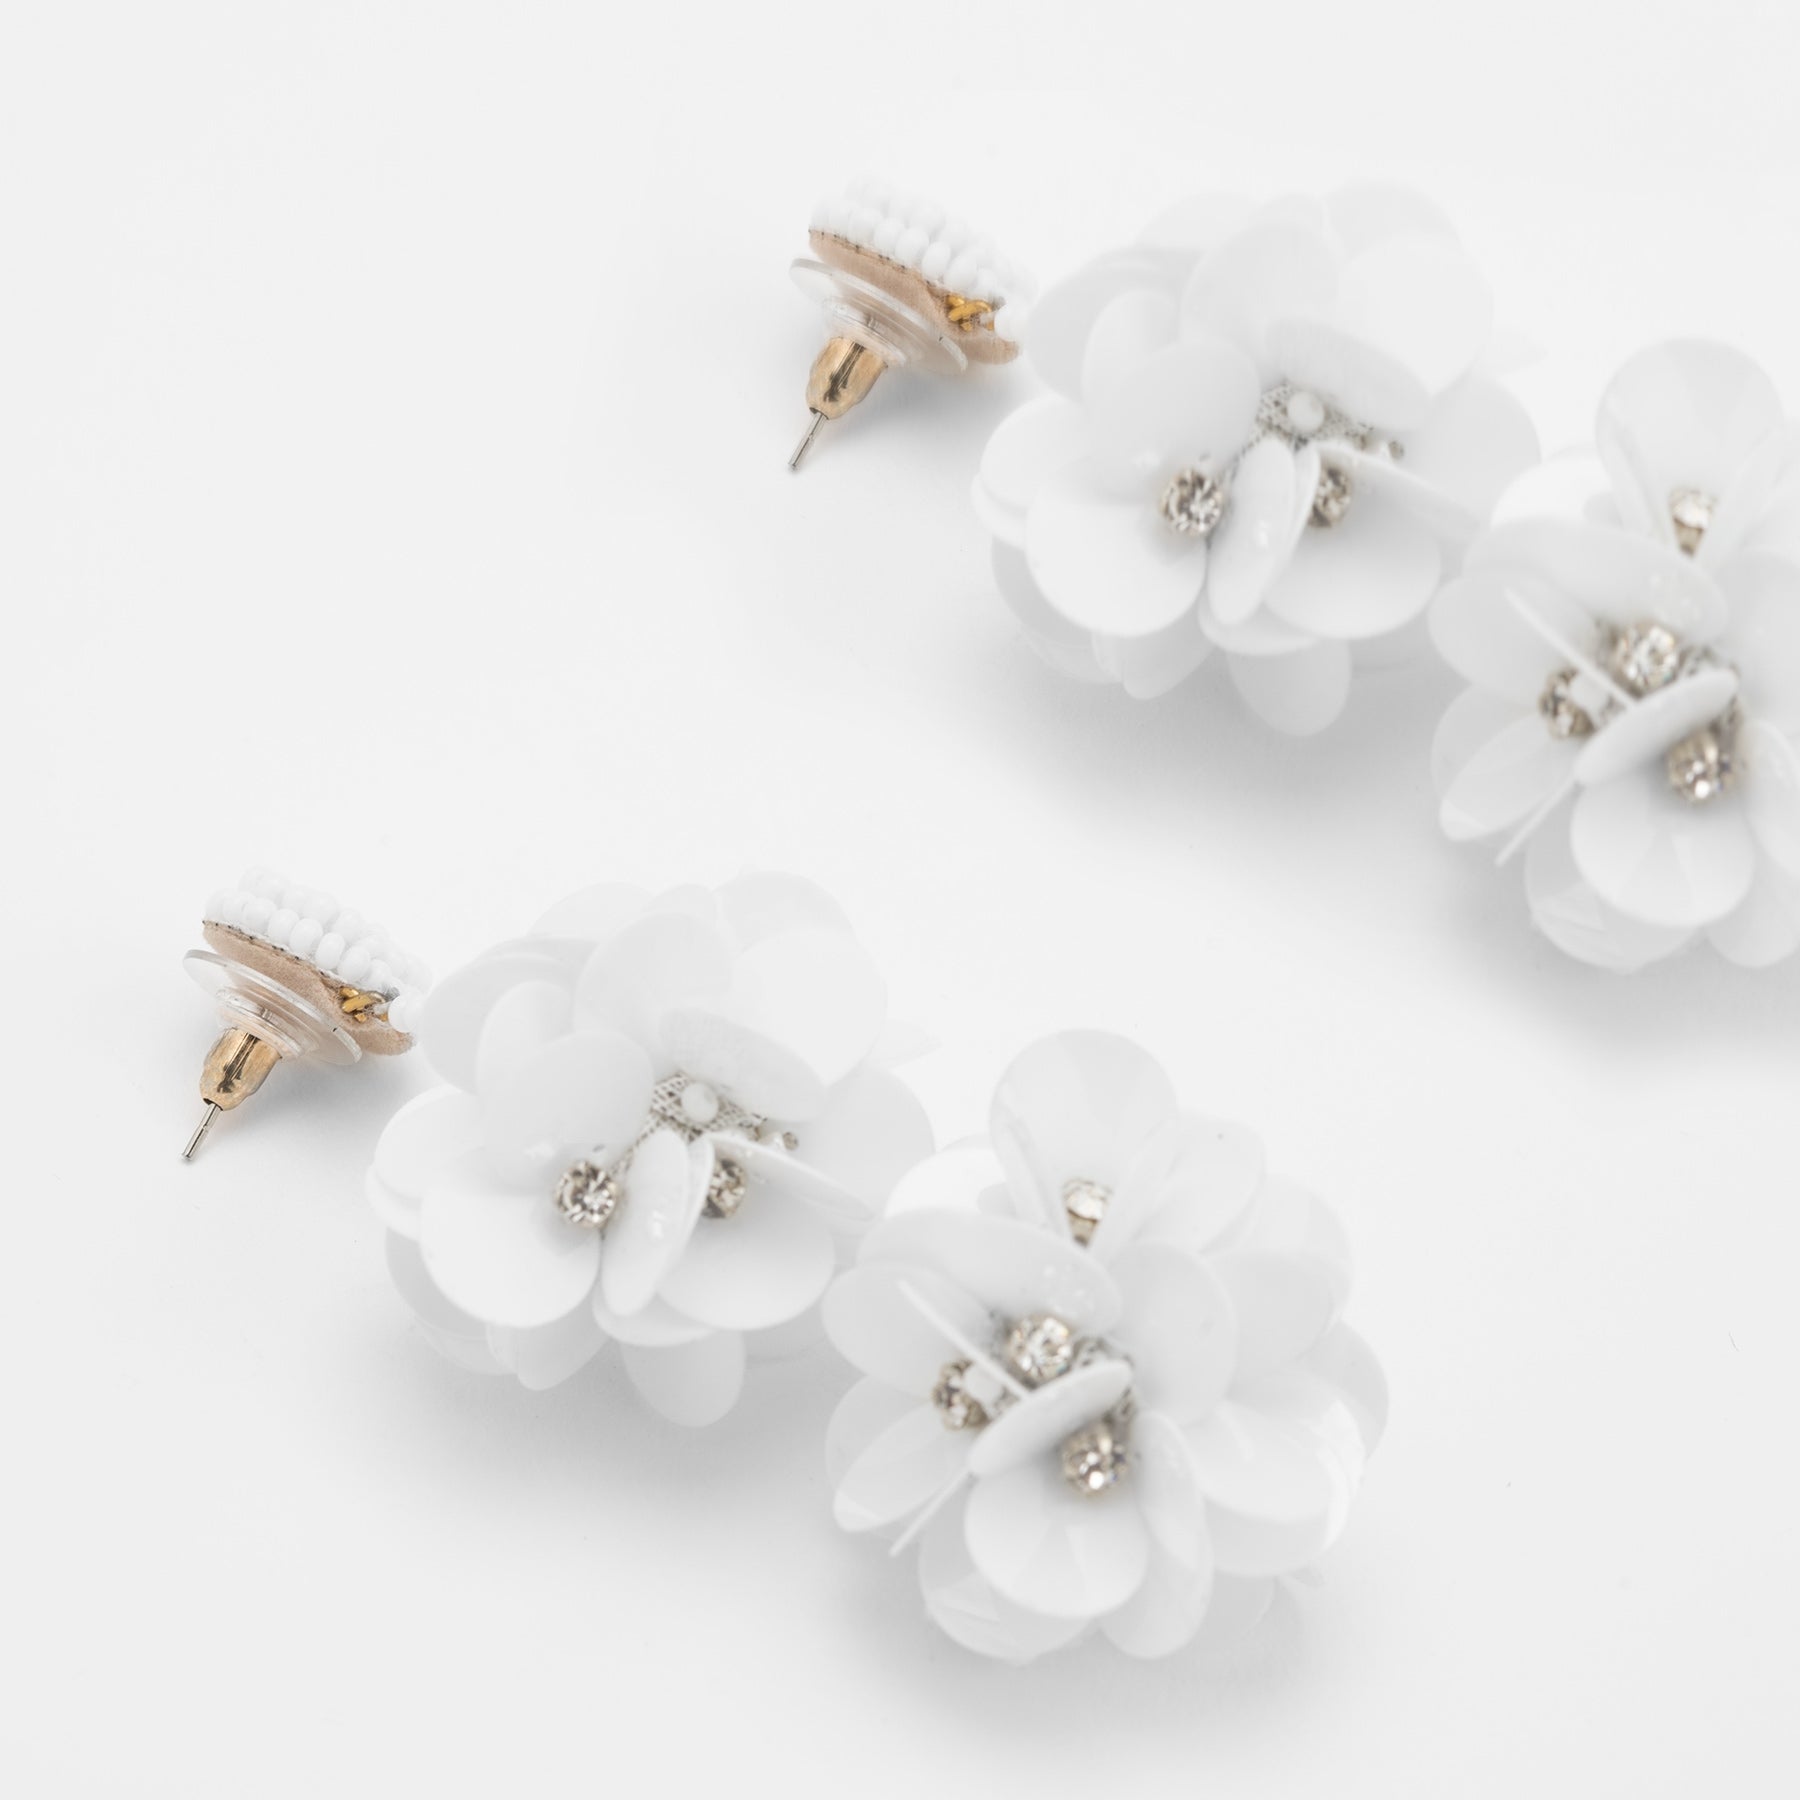 White Flower Drop Earrings